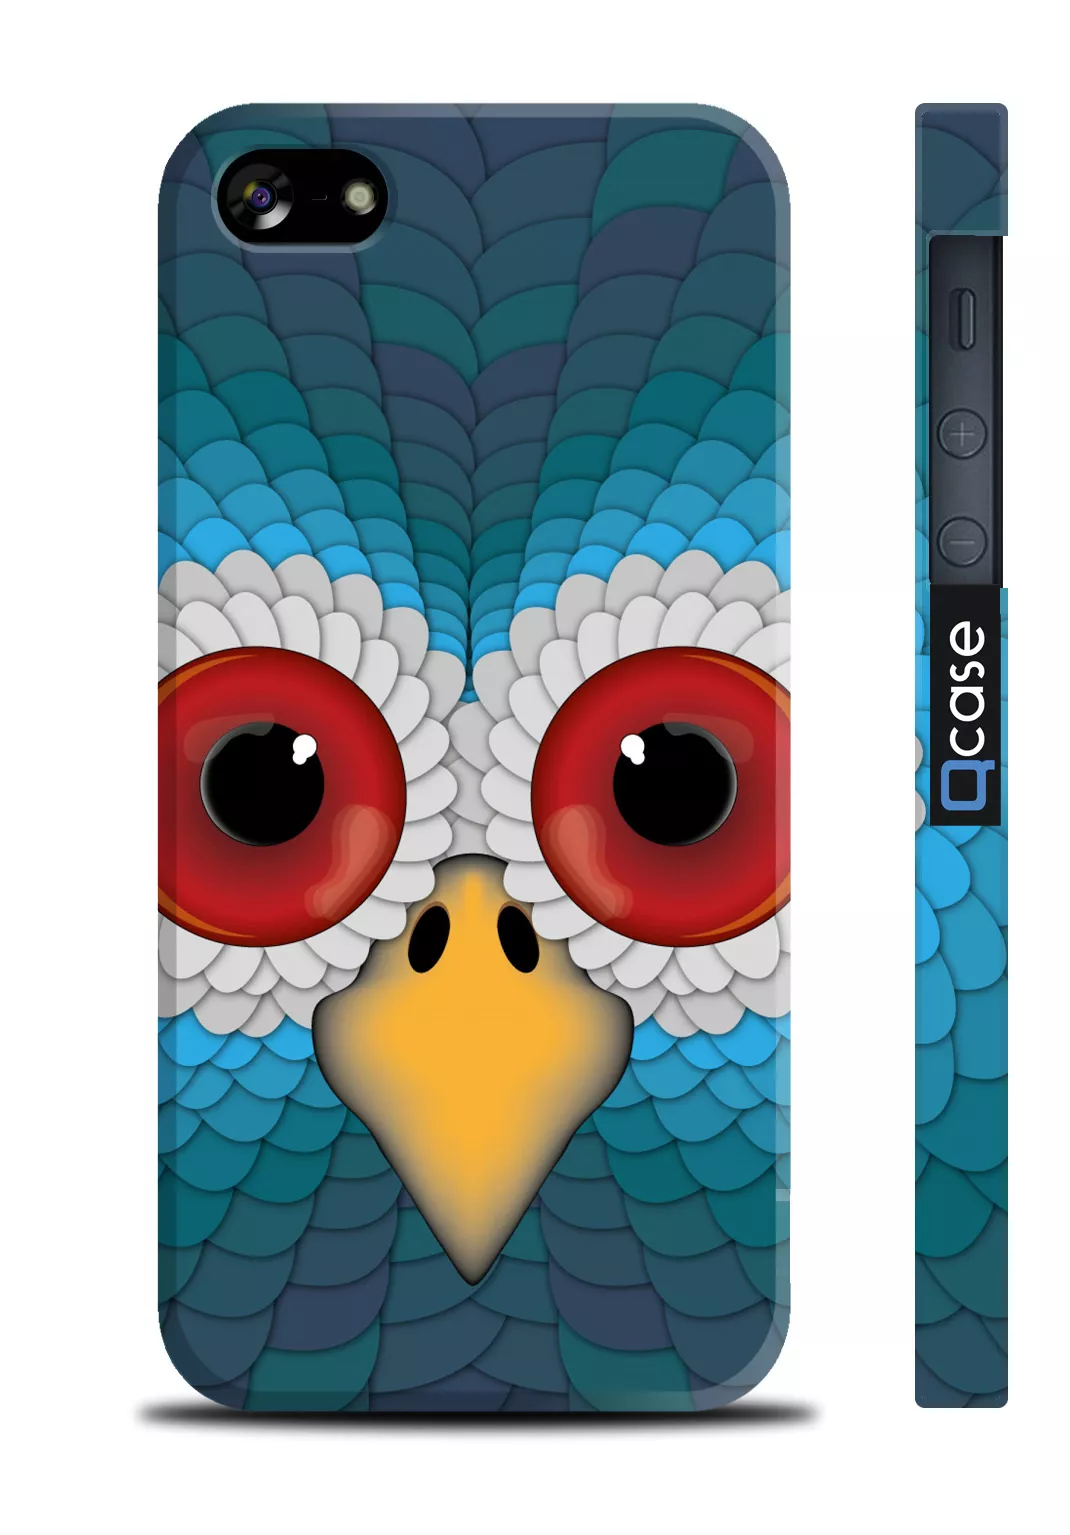 Смешной чехол на iPhone 5/5S с совой - Owl 